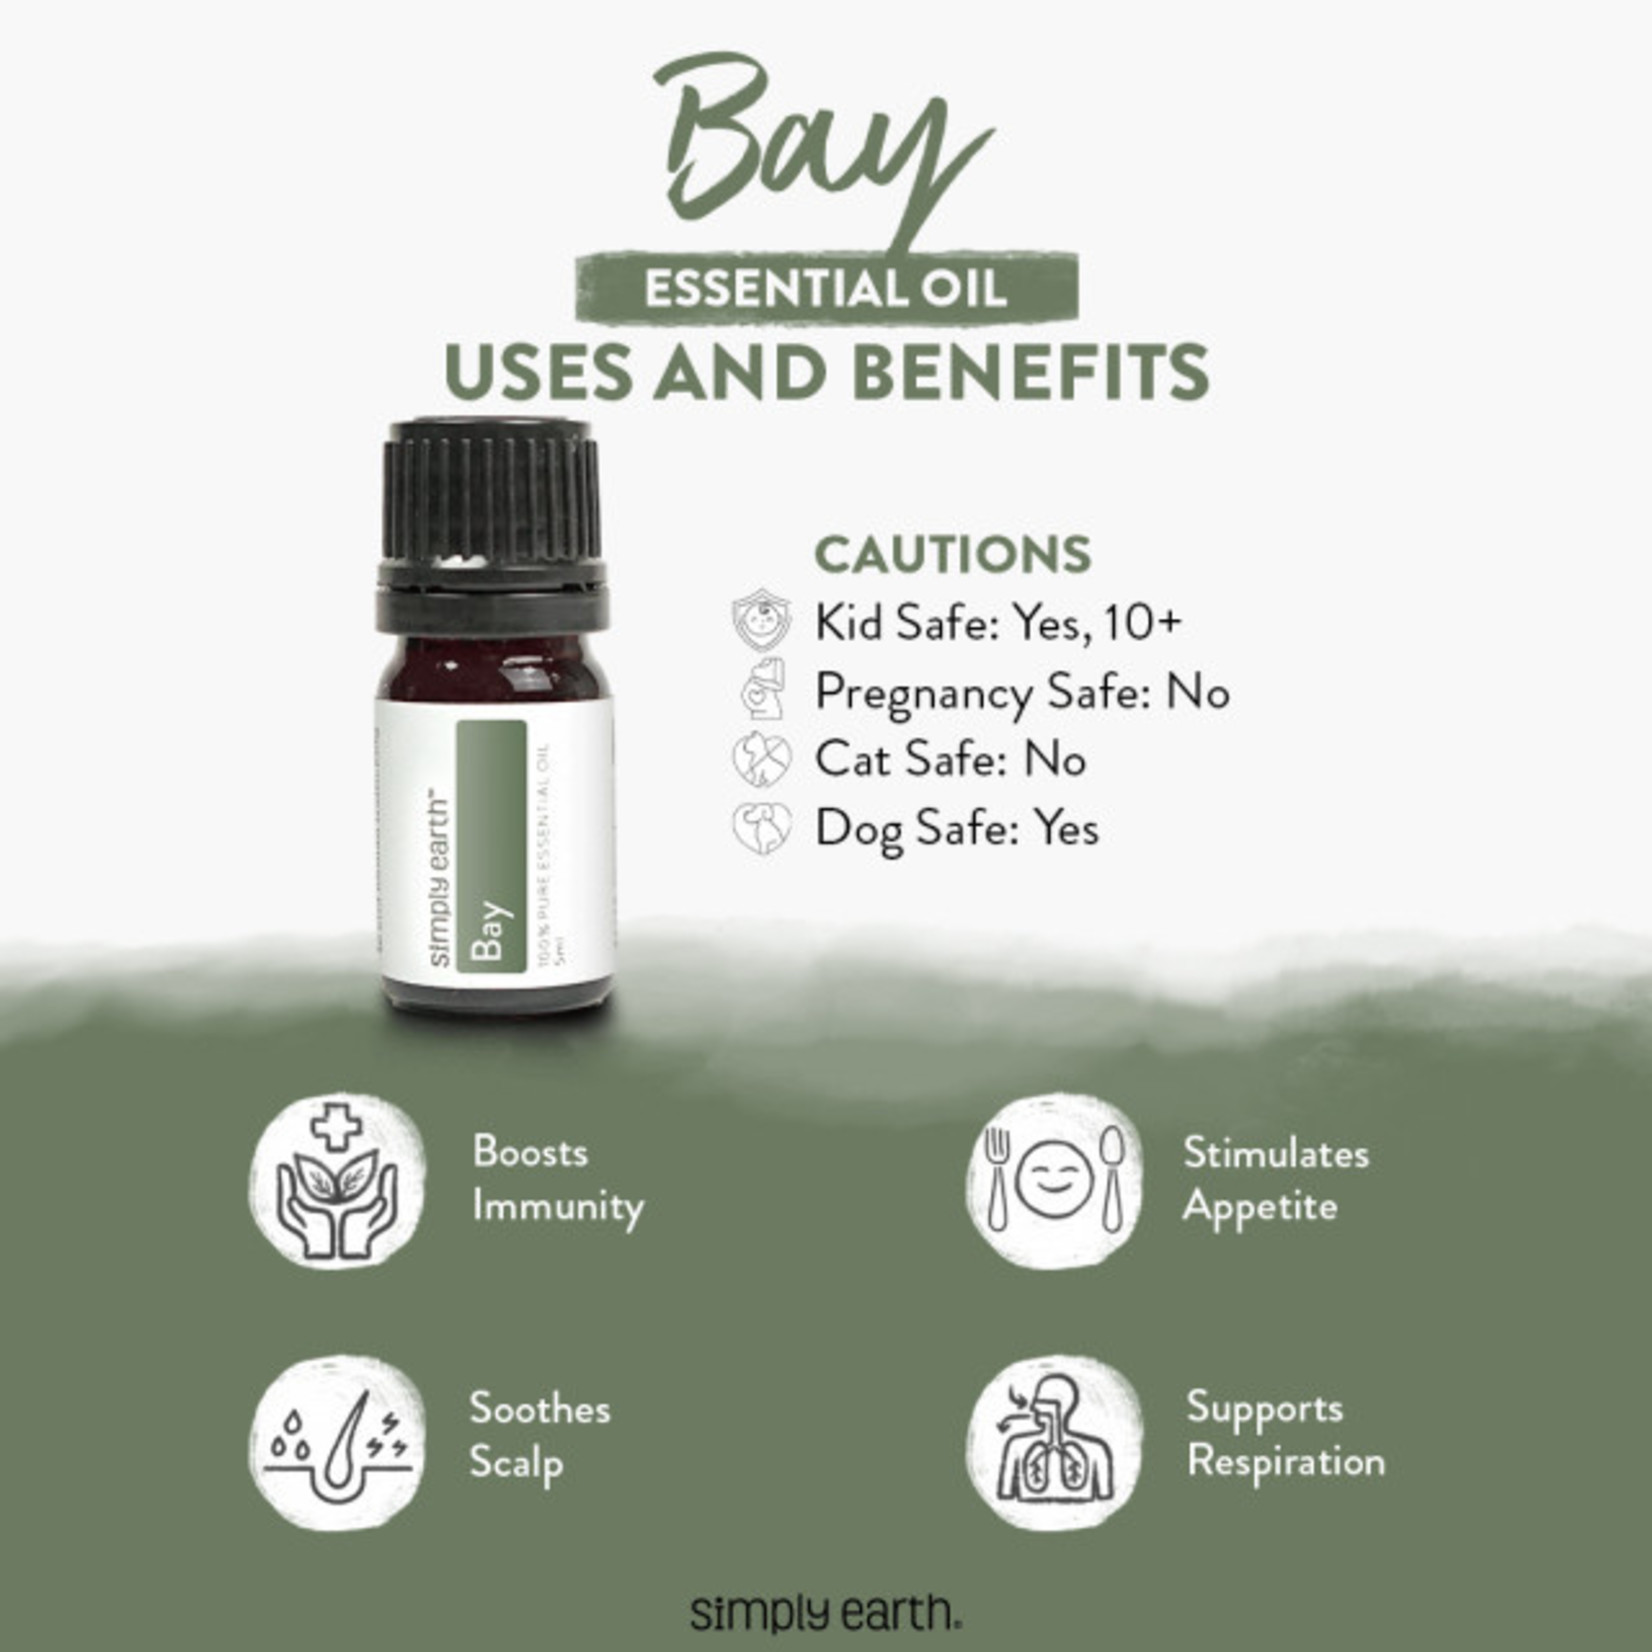 Simply Earth© Essential Oil - Bay (Laurel Leaf)